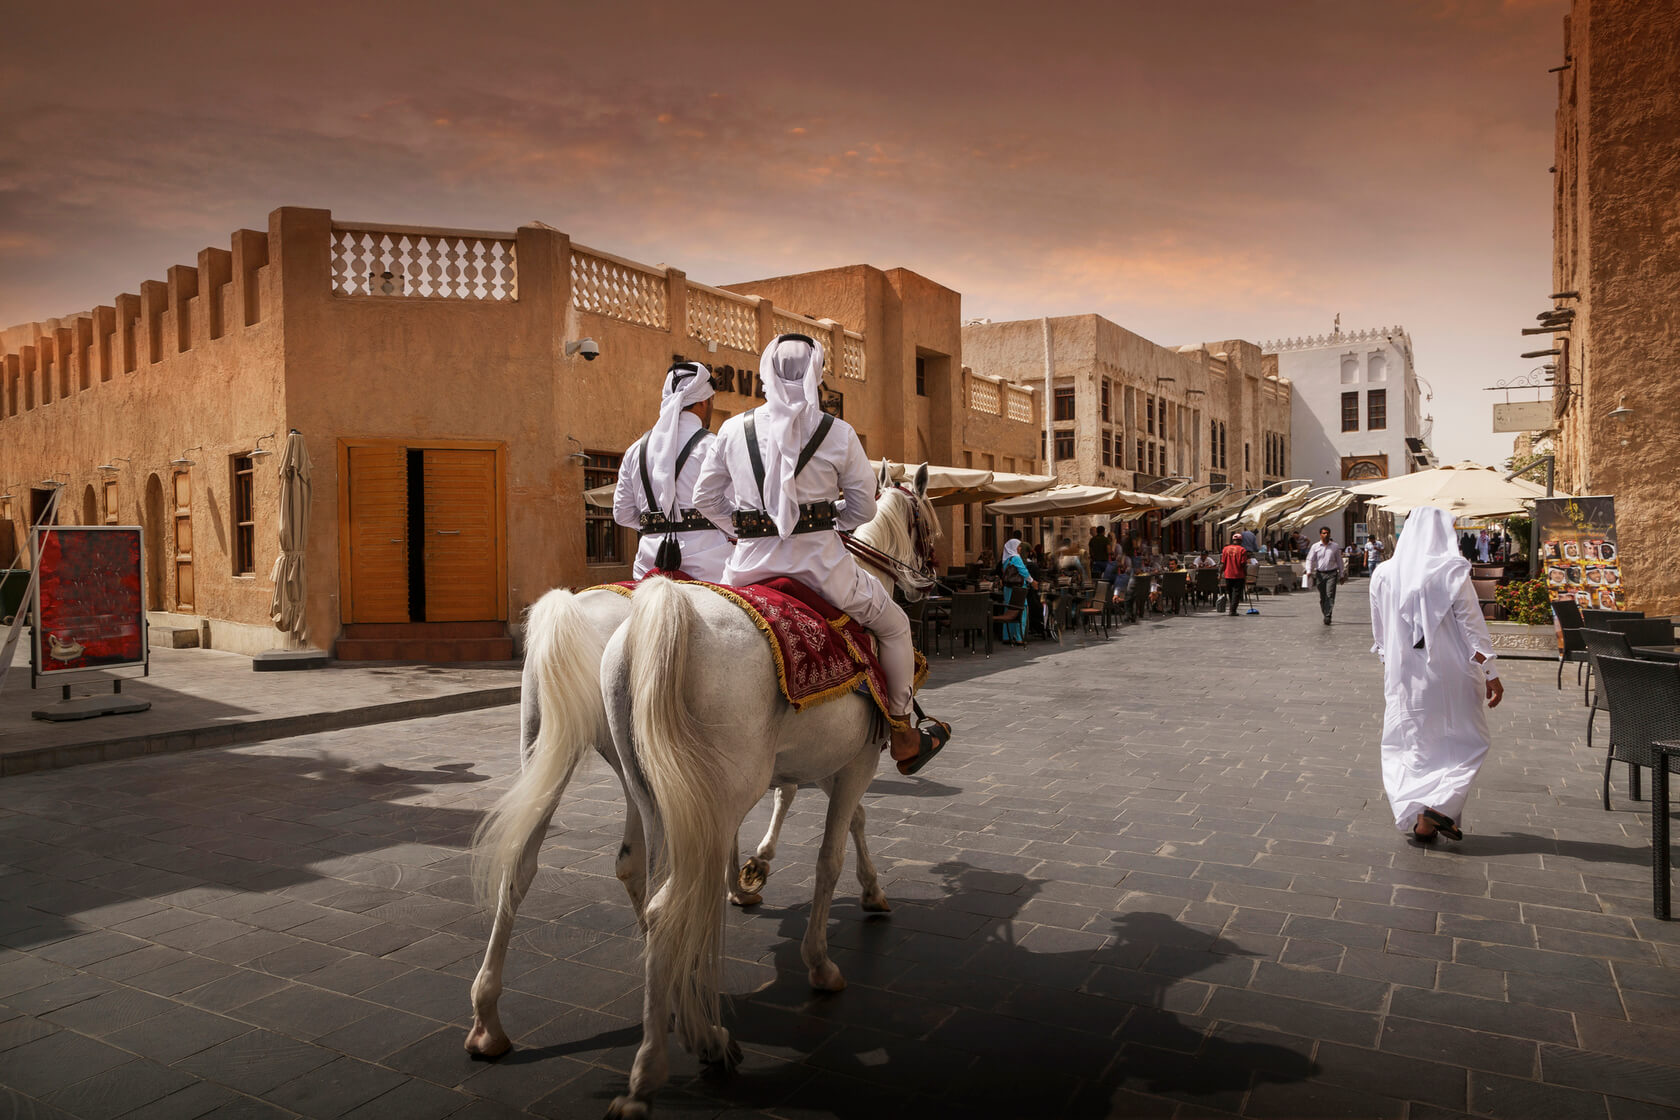 Men riding horses on Doha street, Doha, Qatar 